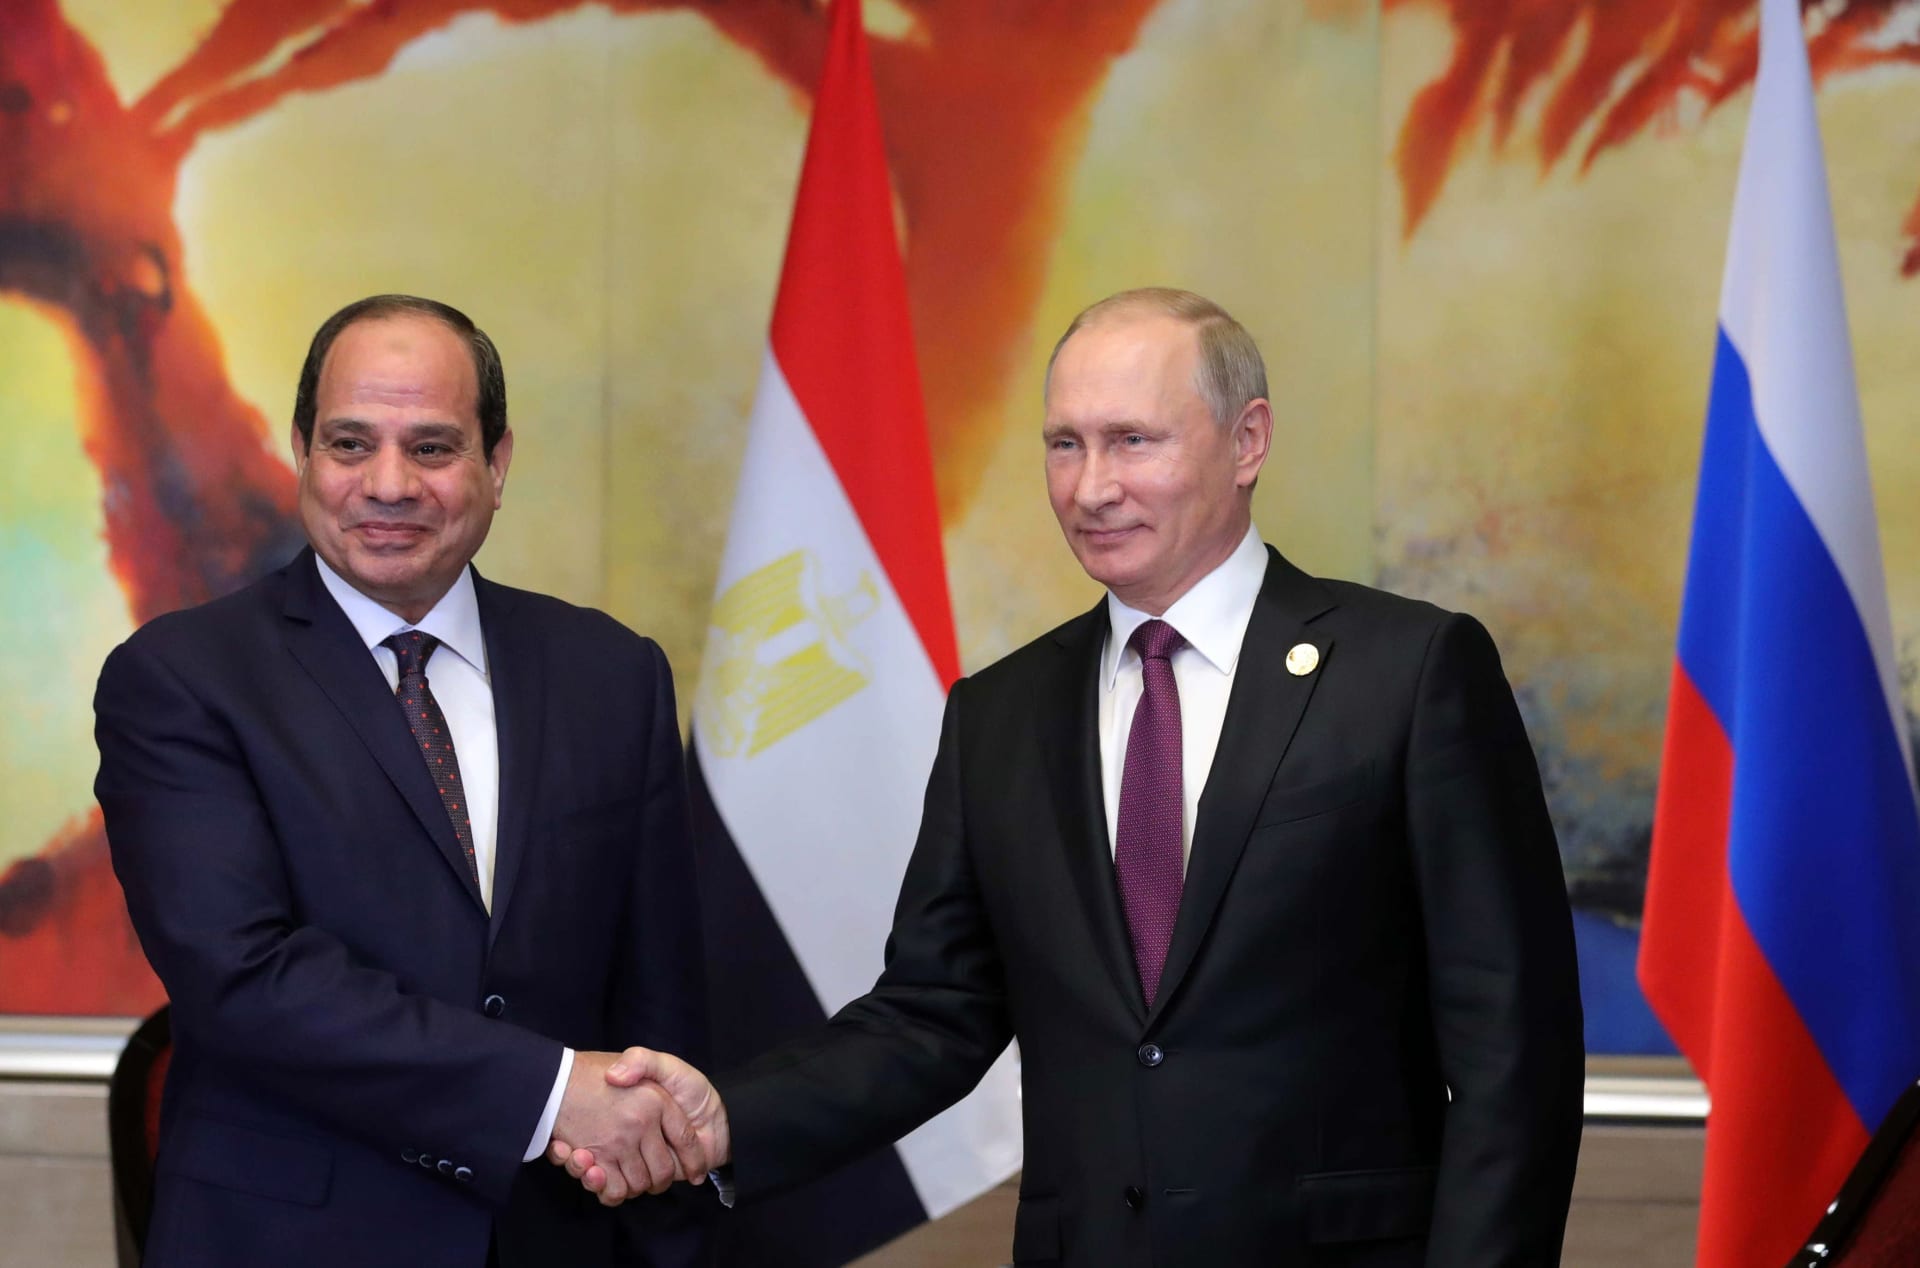 بوتين: علاقات روسيا ومصر تتحسن وسأزور القاهرة في الوقت المناسب